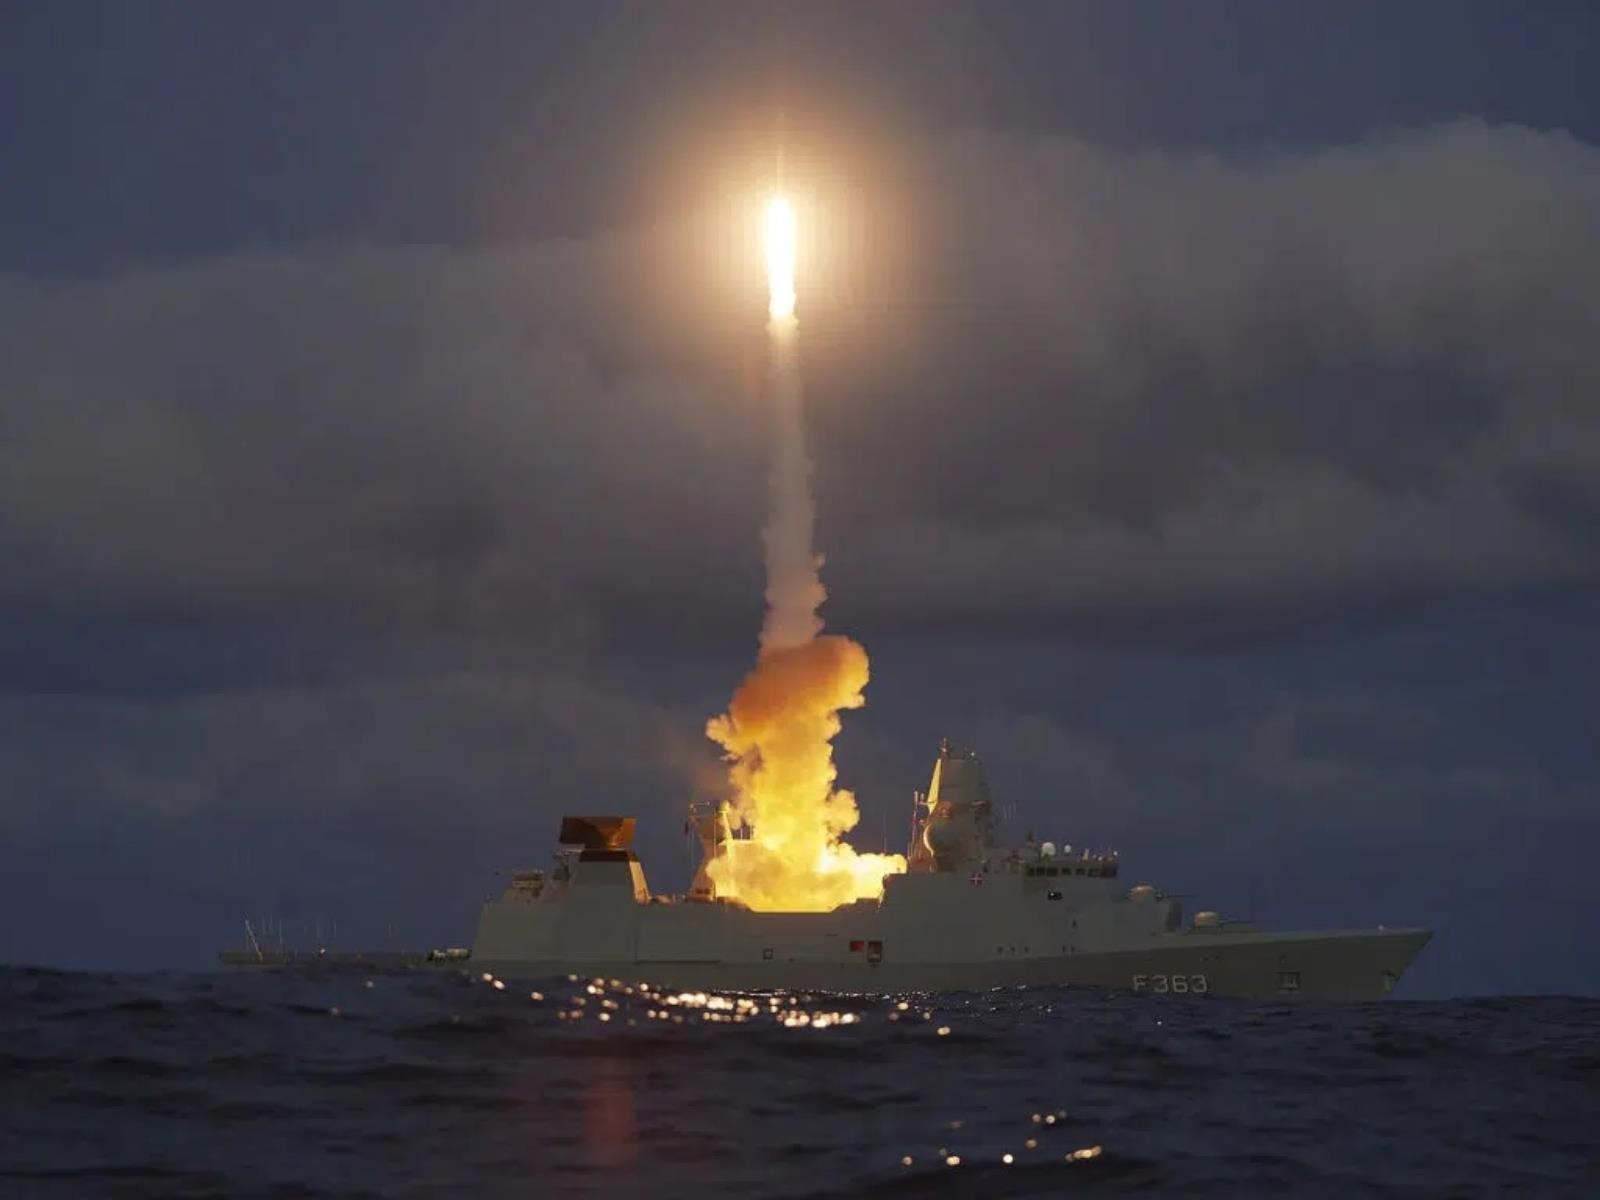 Duńska marynarka przetestowała SM-2, przeciwlotniczy pocisk, ochrony przeciwlotniczej państwa